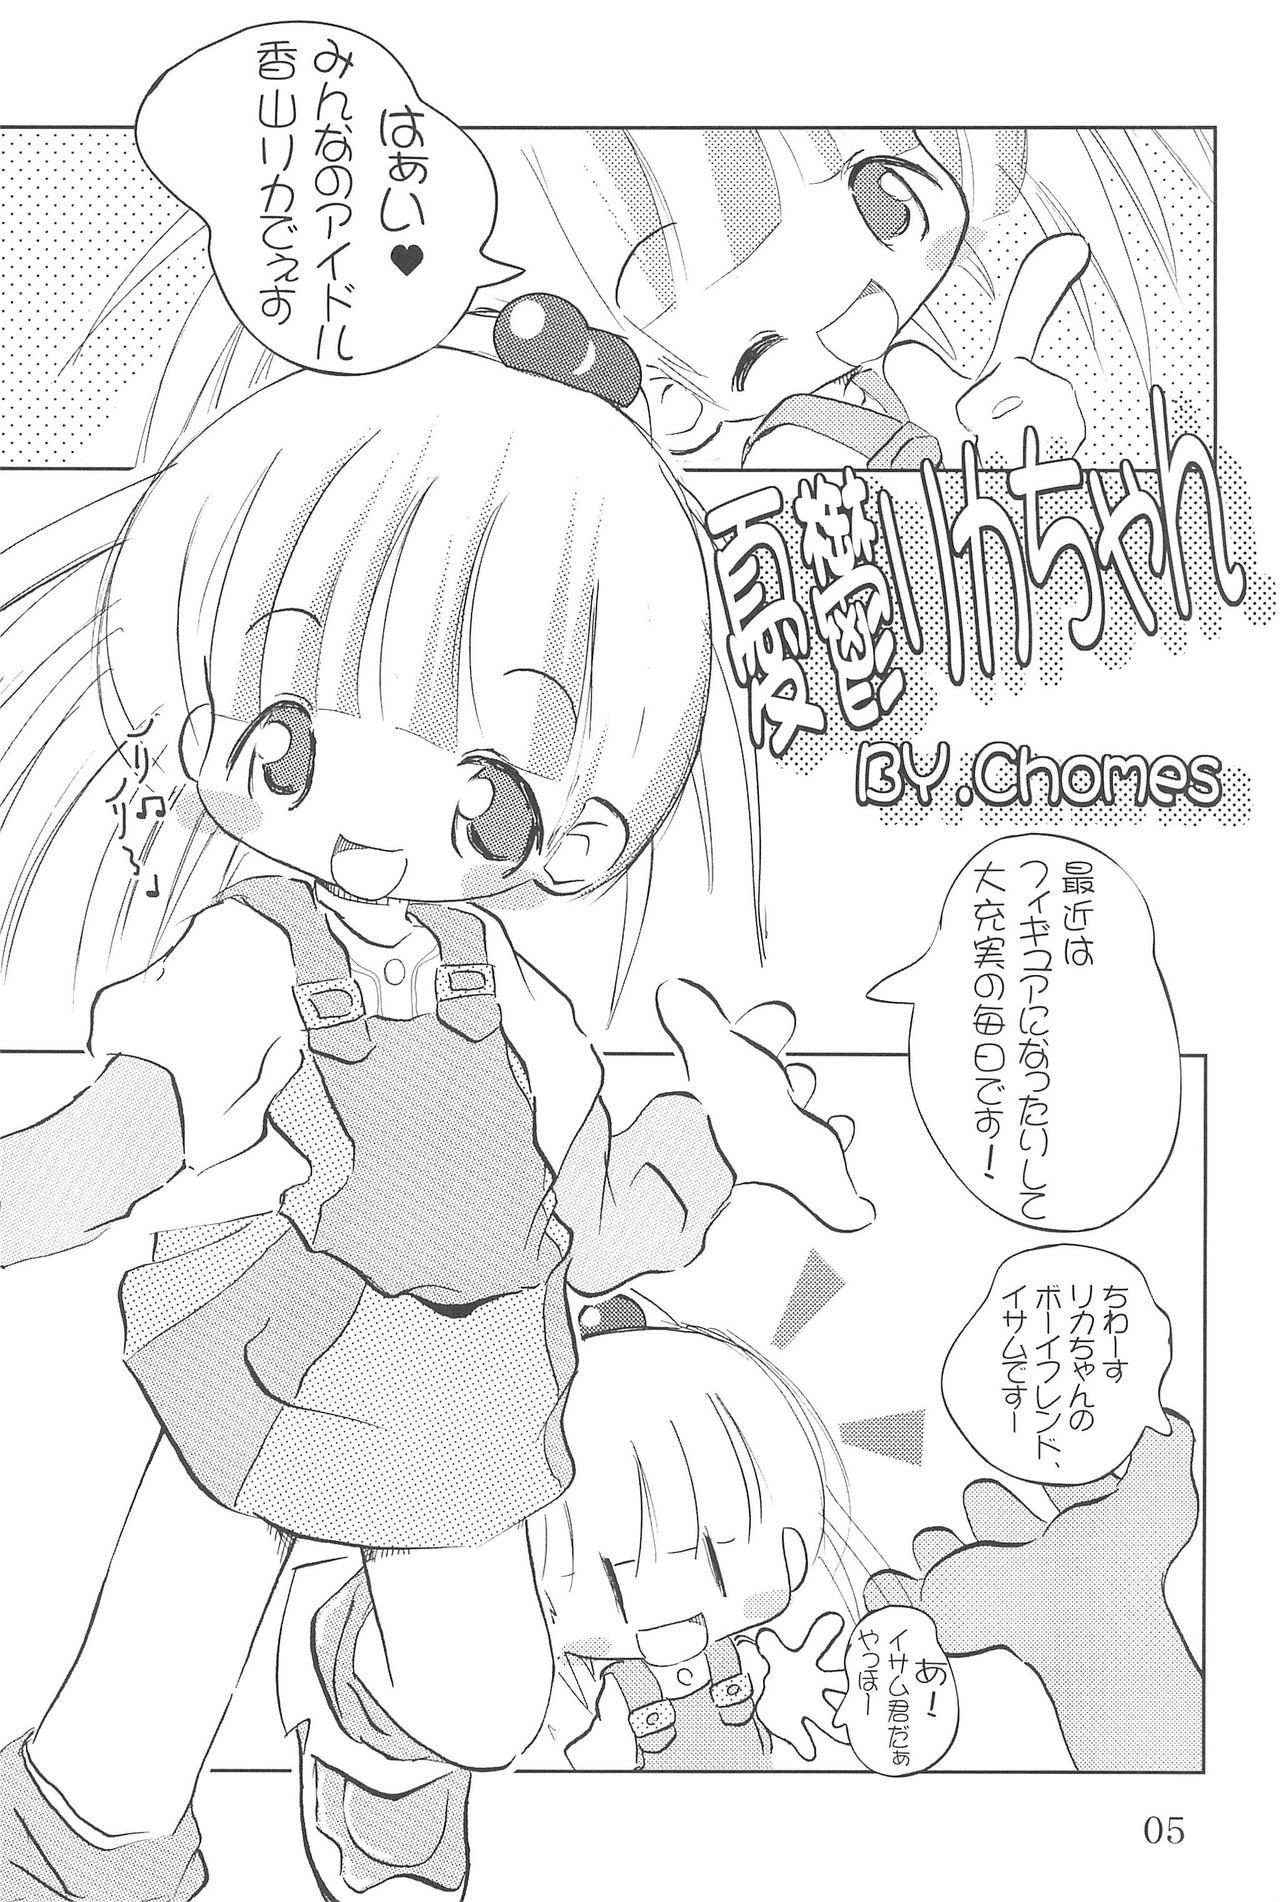 Liveshow WataRika - Shuukan watashi no onii-chan Licca vignette Reverse - Page 7